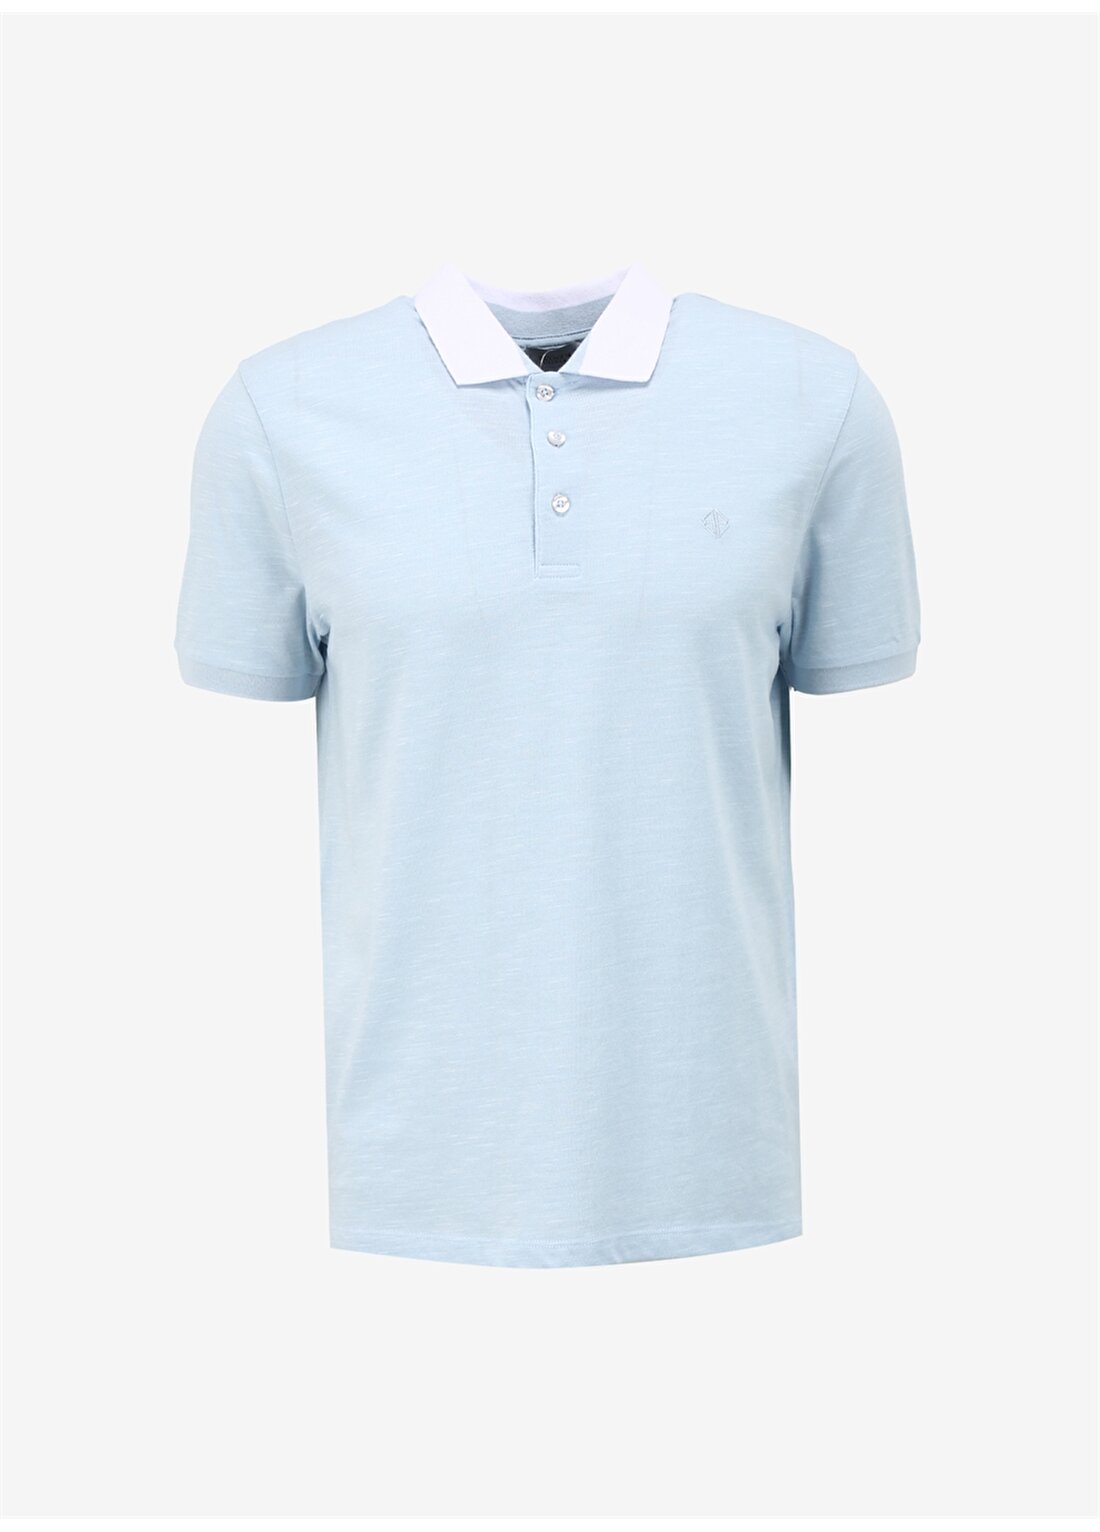 Beymen Business Açık Mavi Erkek Polo T-Shirt 4BX482420001